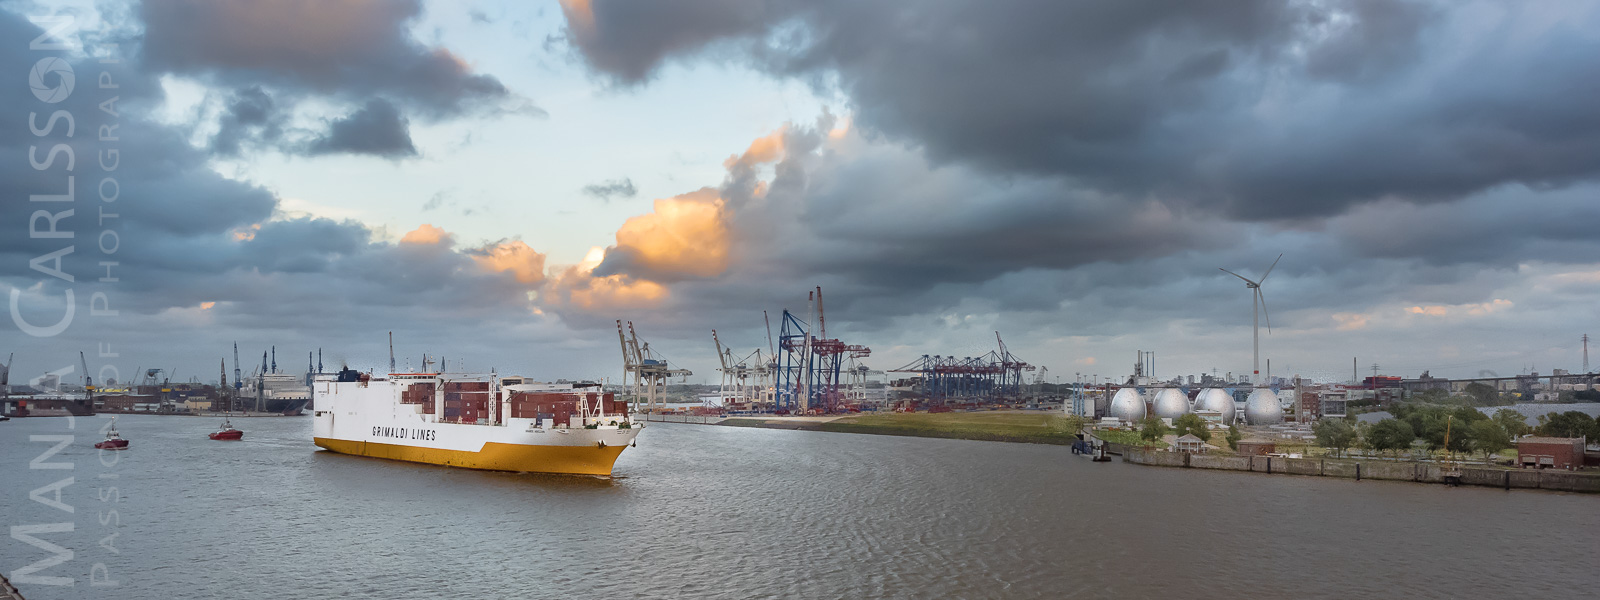 Containerschiff Grimaldi Lines verlässt den Hamburger Hafen